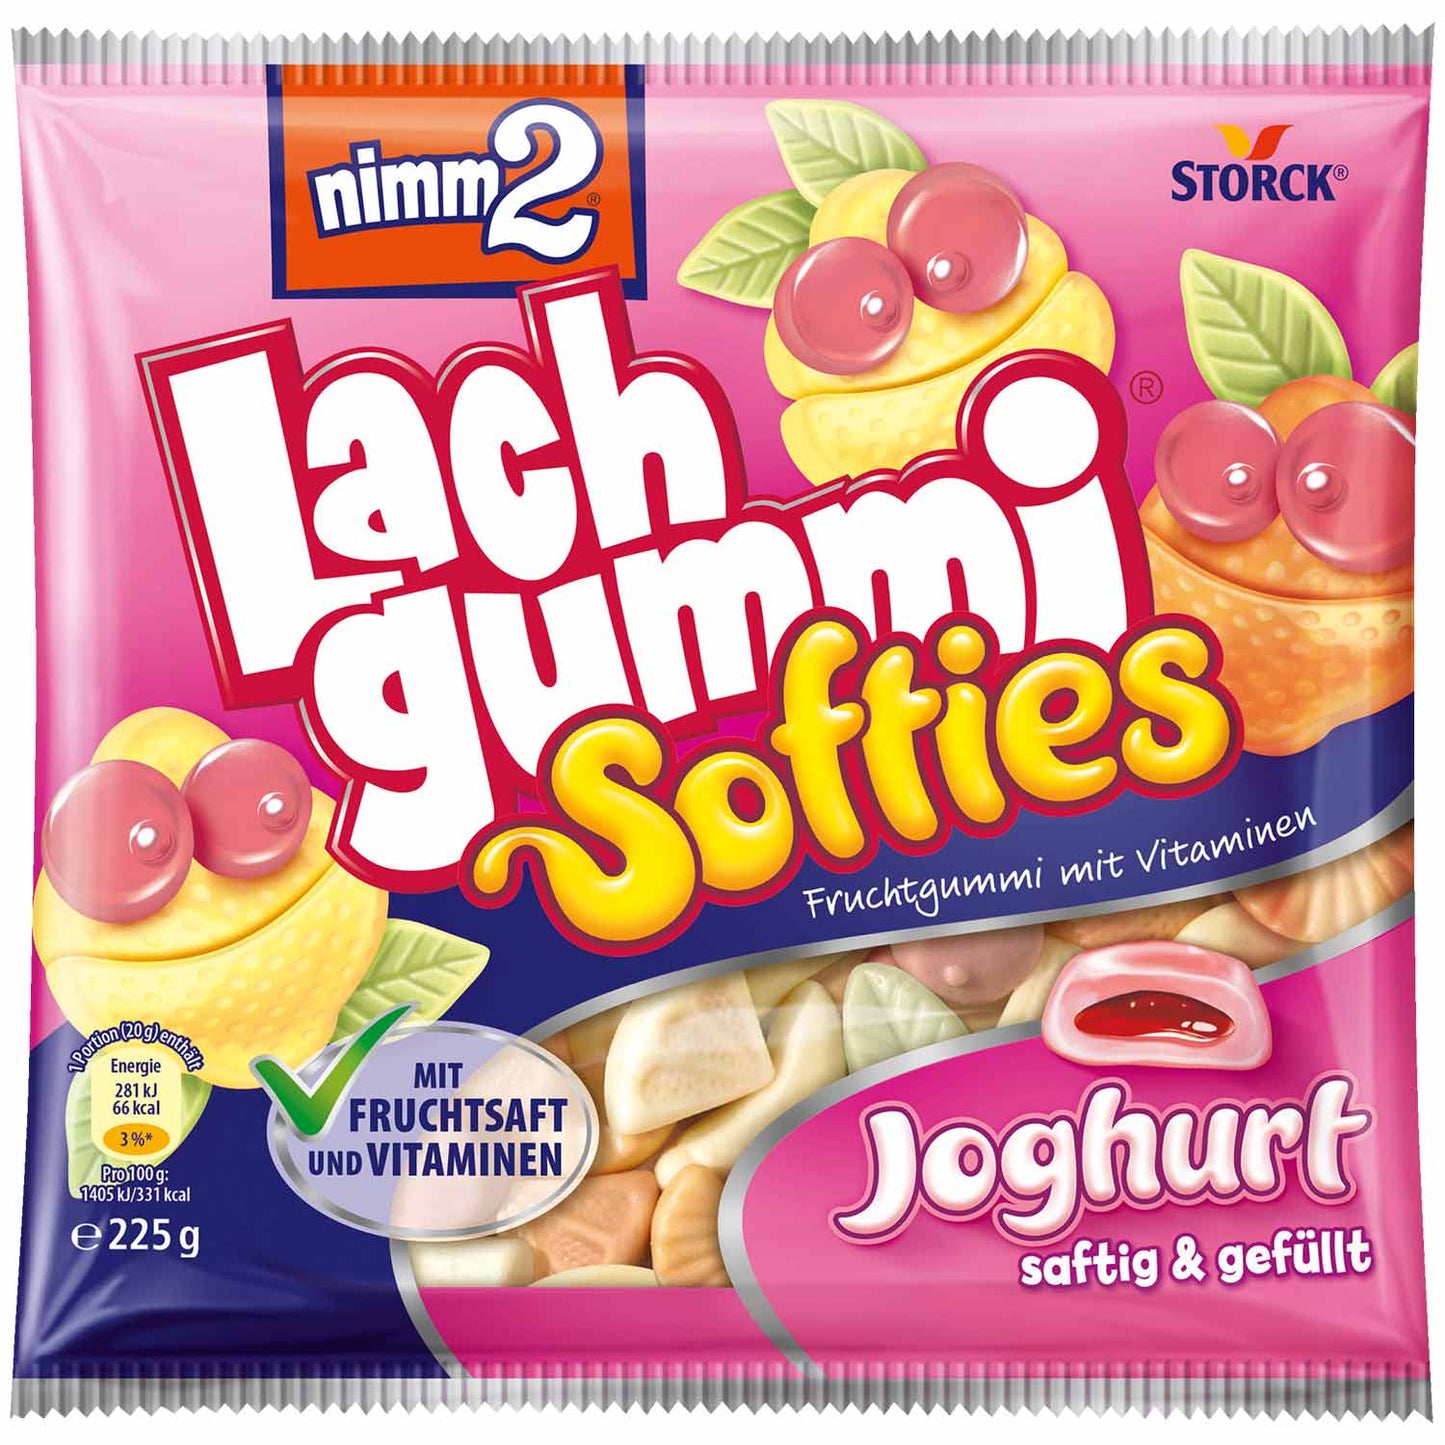 nimm2 Lachgummi Softies Joghurt 225g - Candyshop.ch